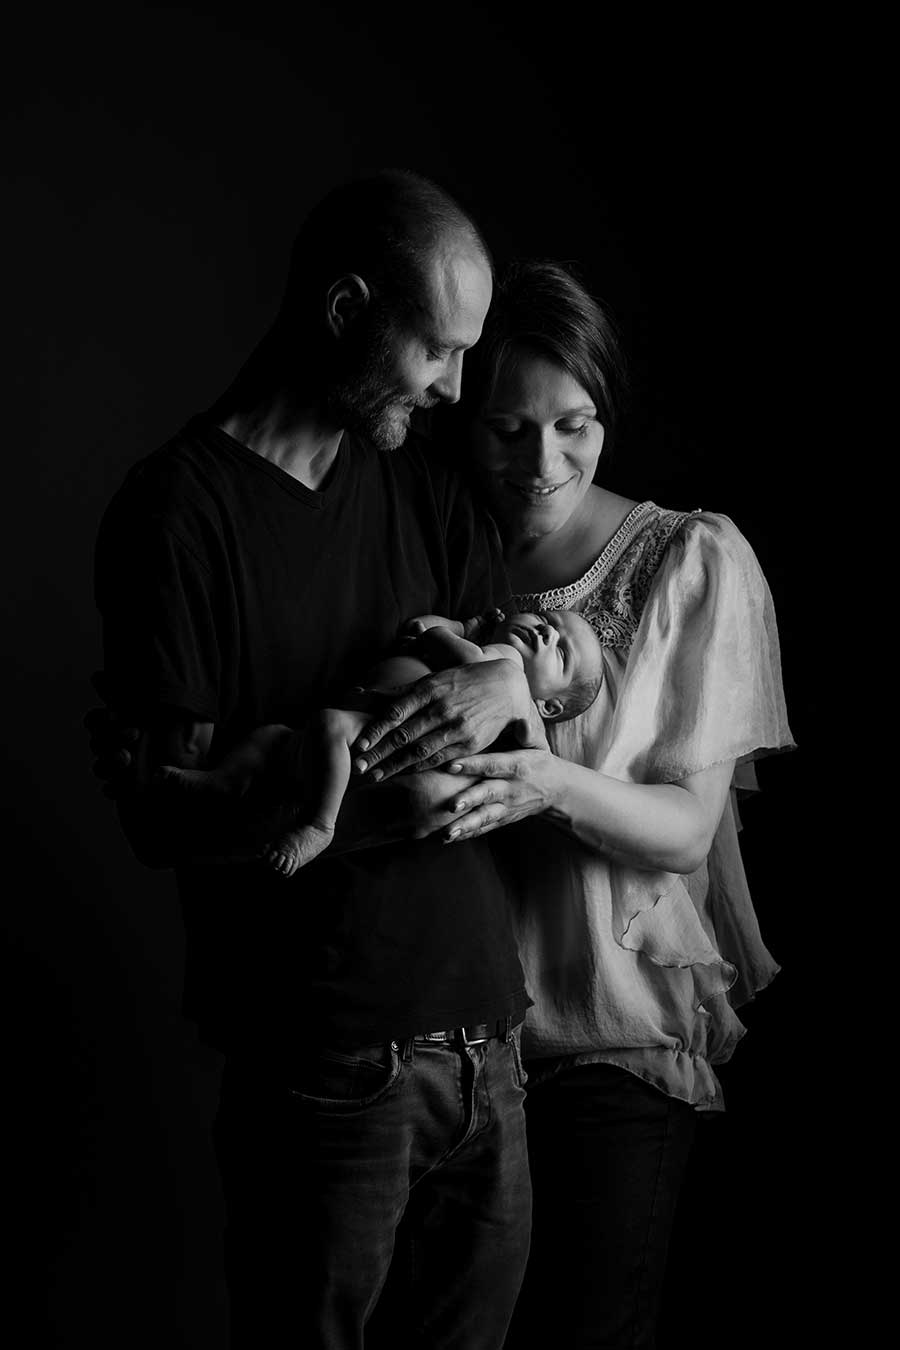 Fotograf Maja Rohde Sværke - detaljebillede af nyfødt babys fødder